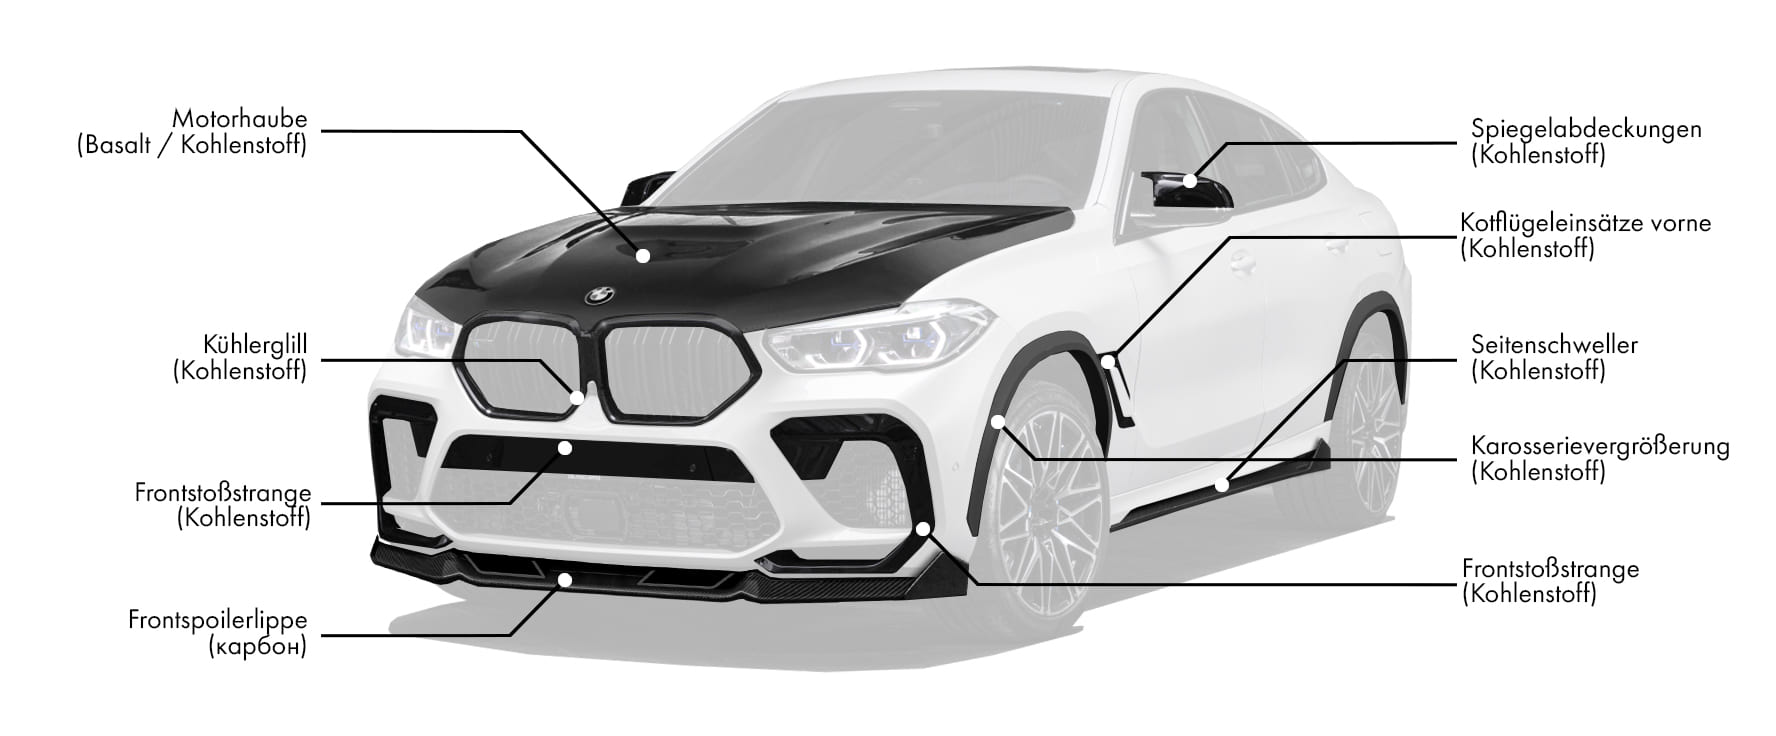 Body-Kits für BMW X6M F96 enthält